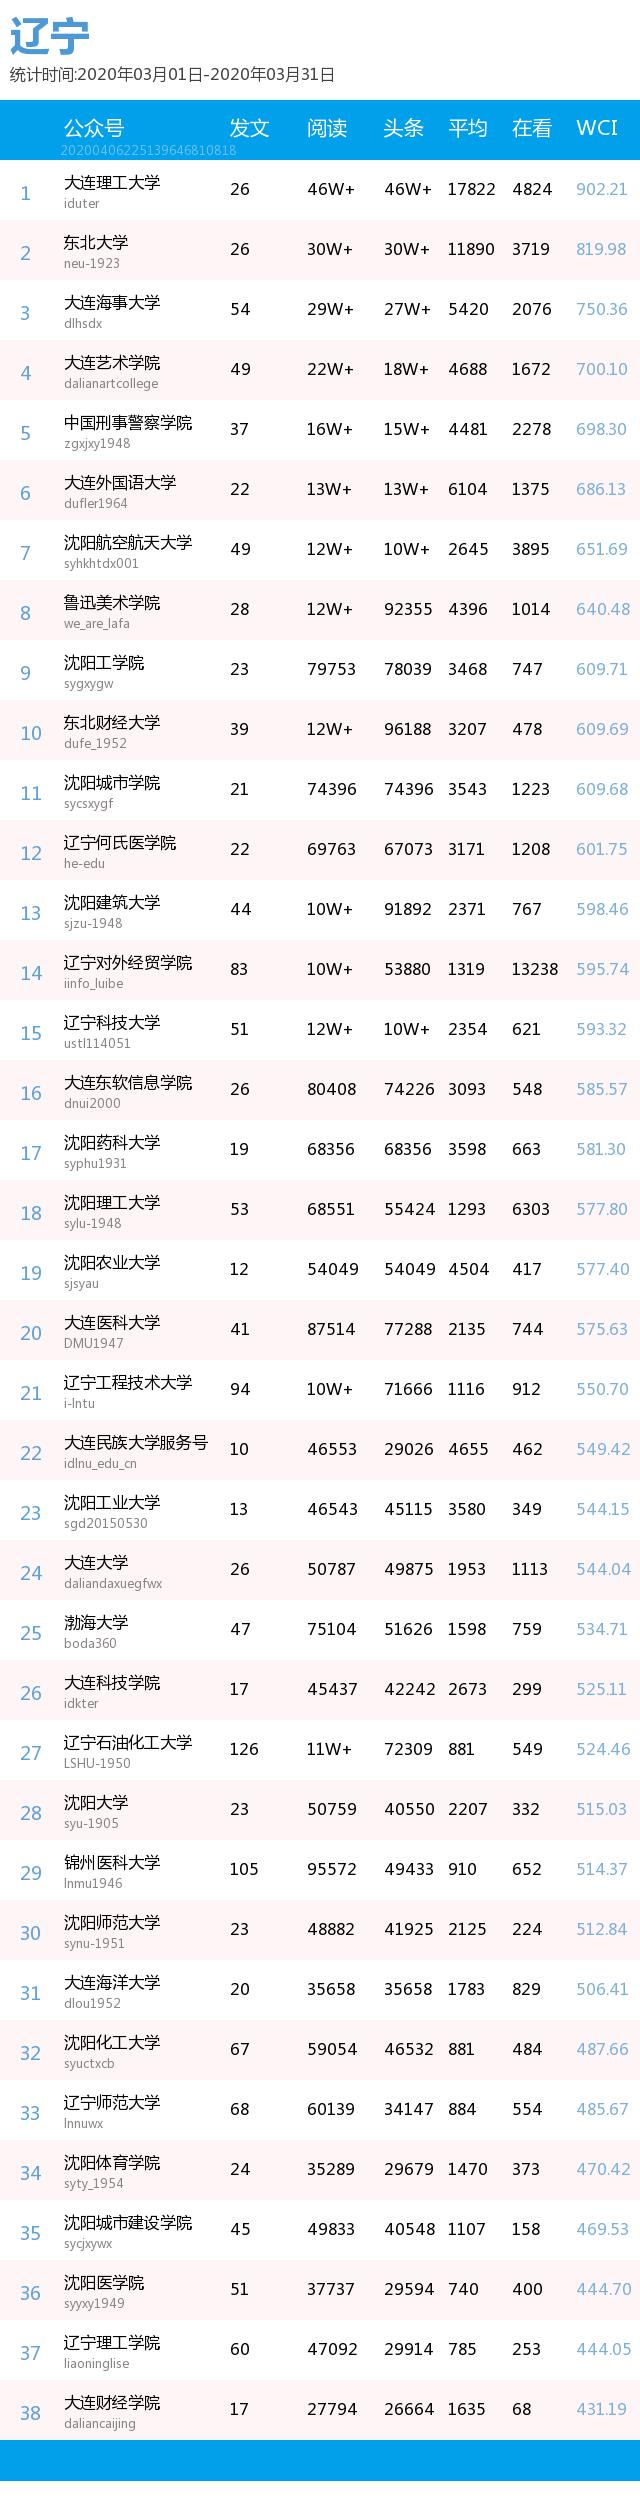 月榜 | 中国大学官微百强（2020年3月普通高校公号）